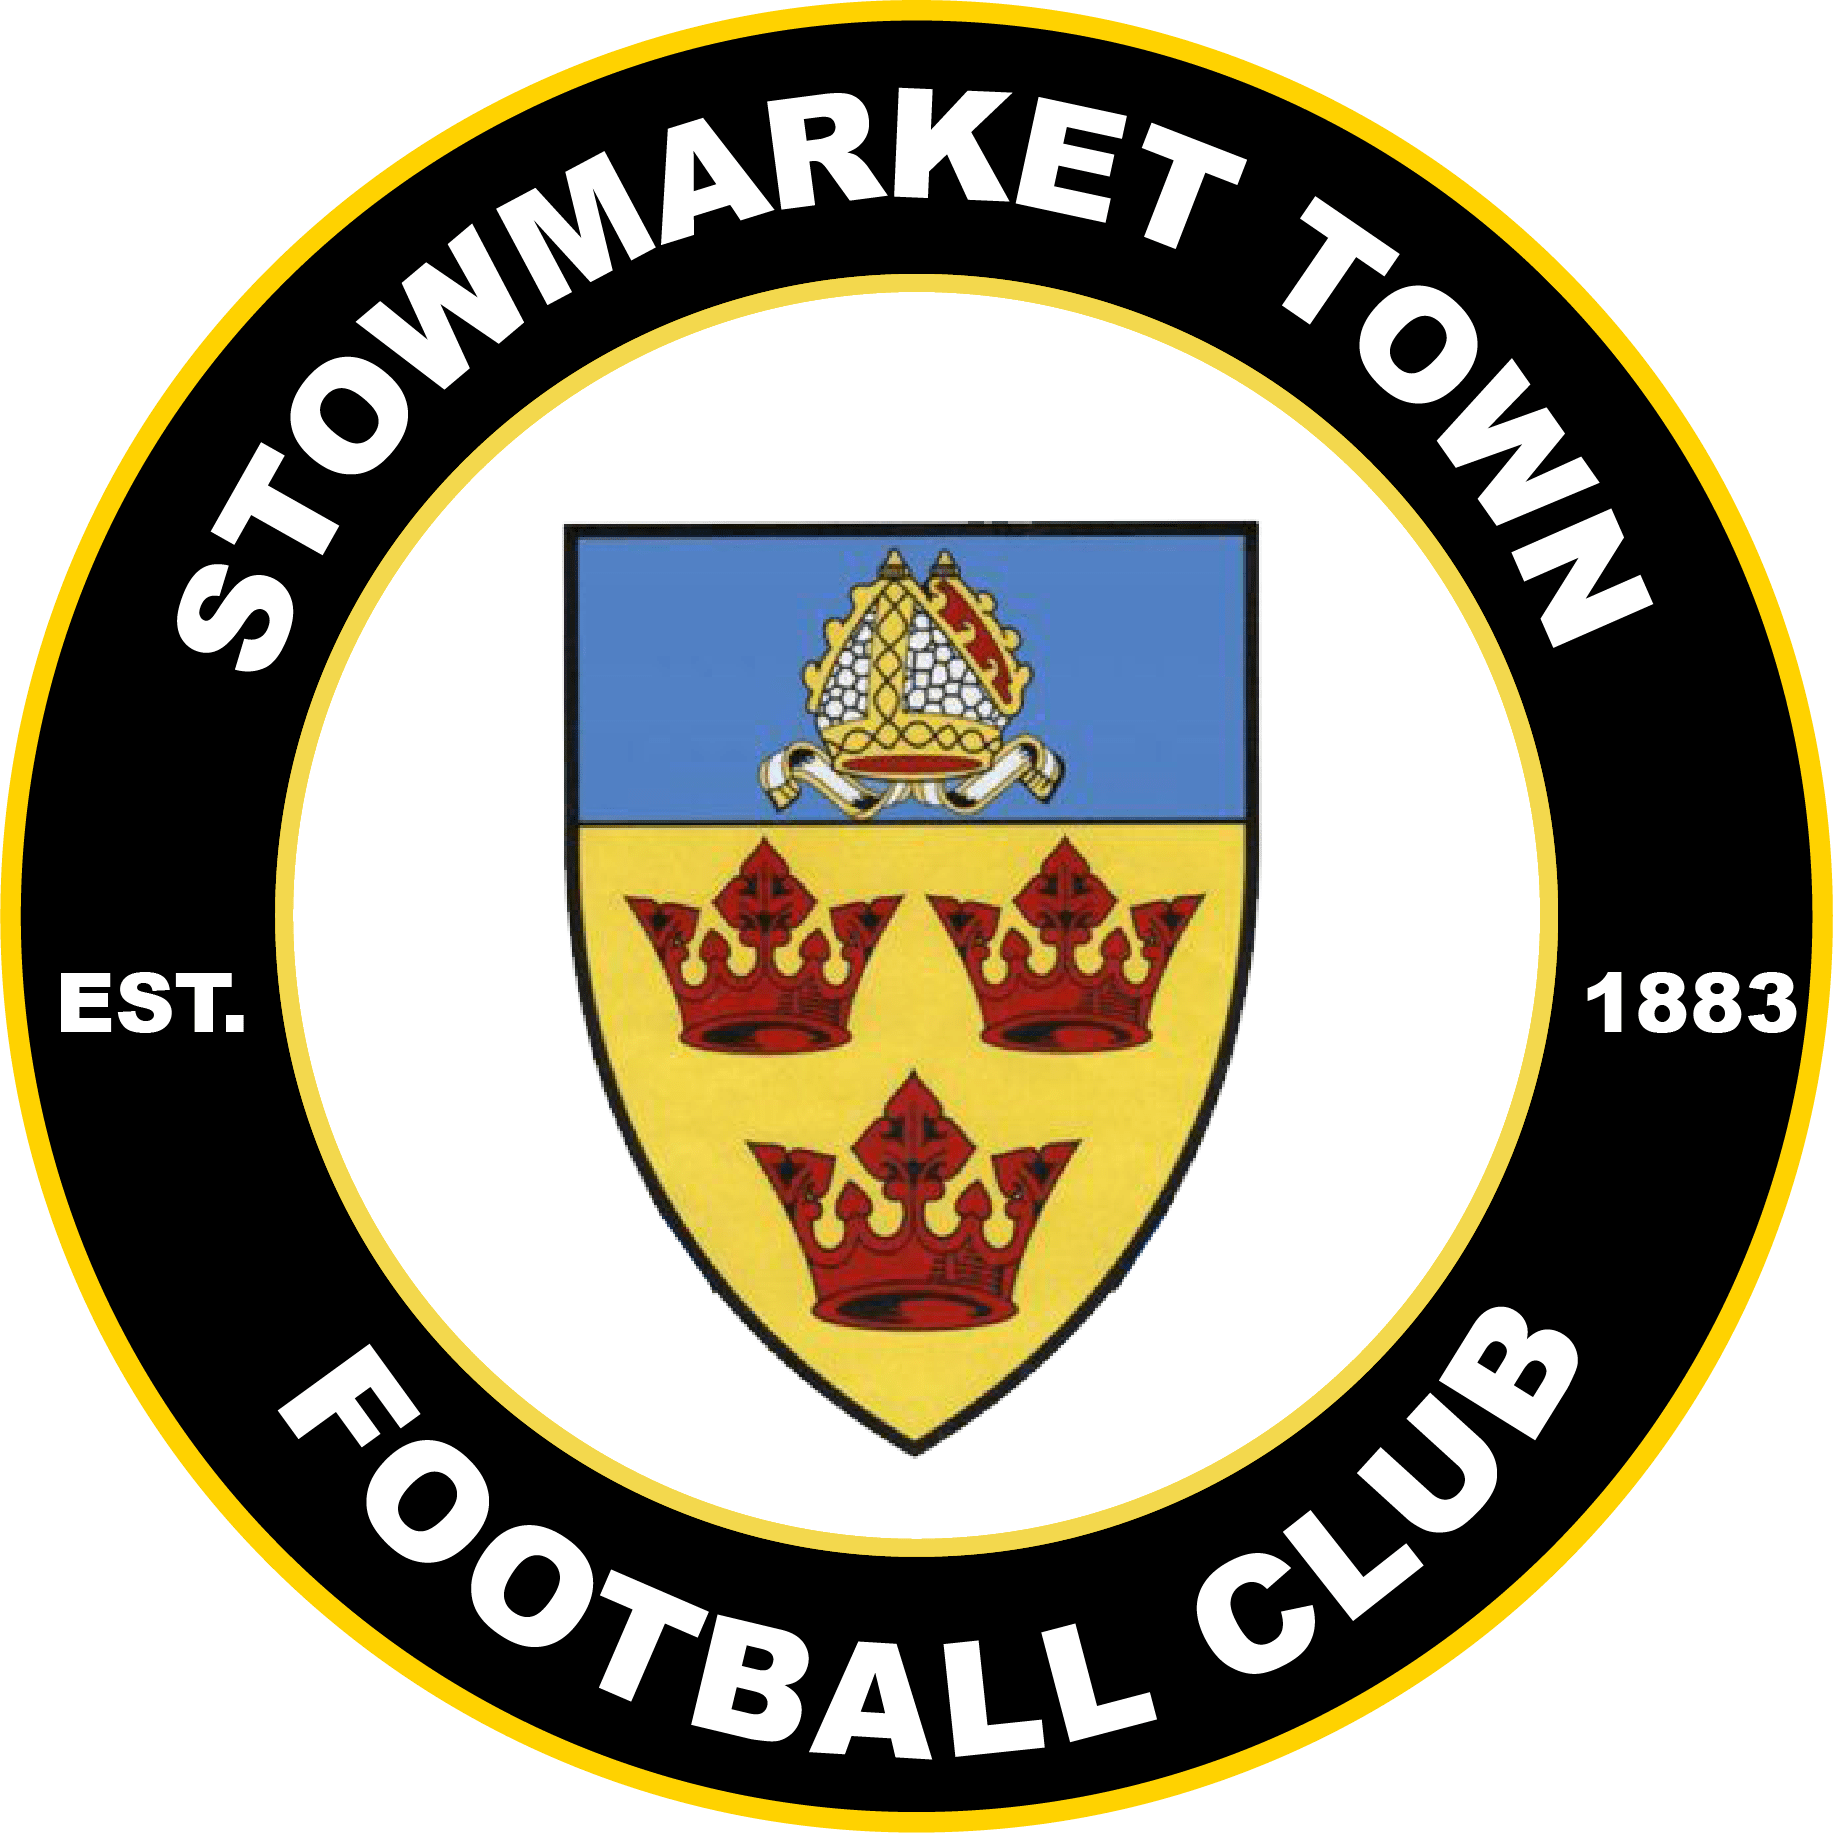 Stowmarket Town Crest